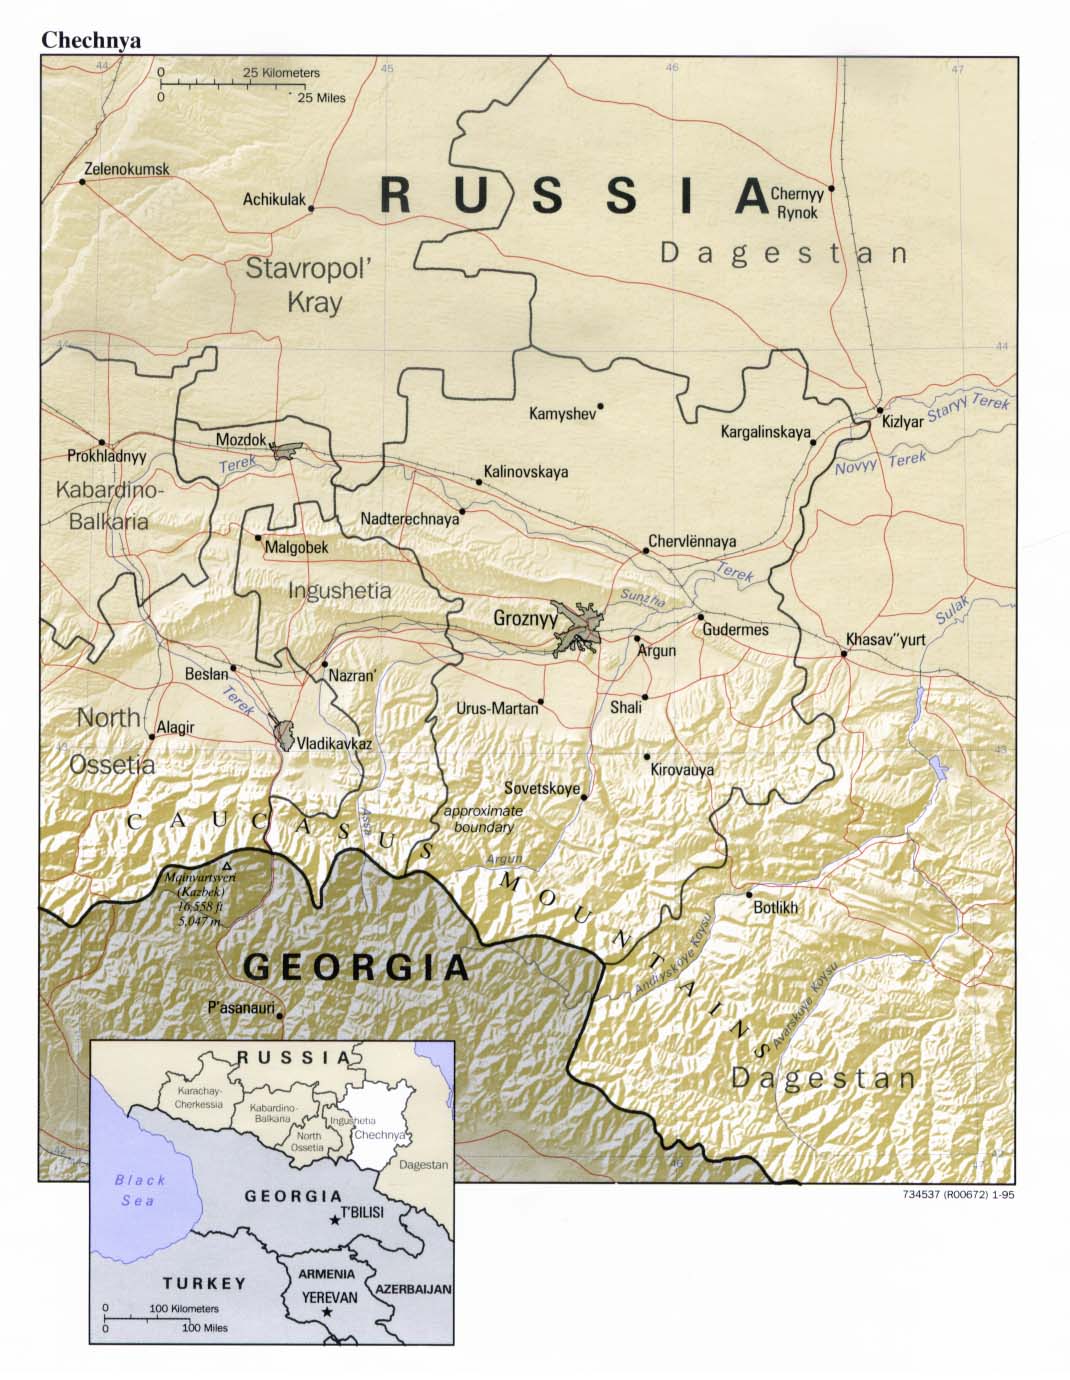 Mapa de Relieve Sombreado de Chechenia, Rusia